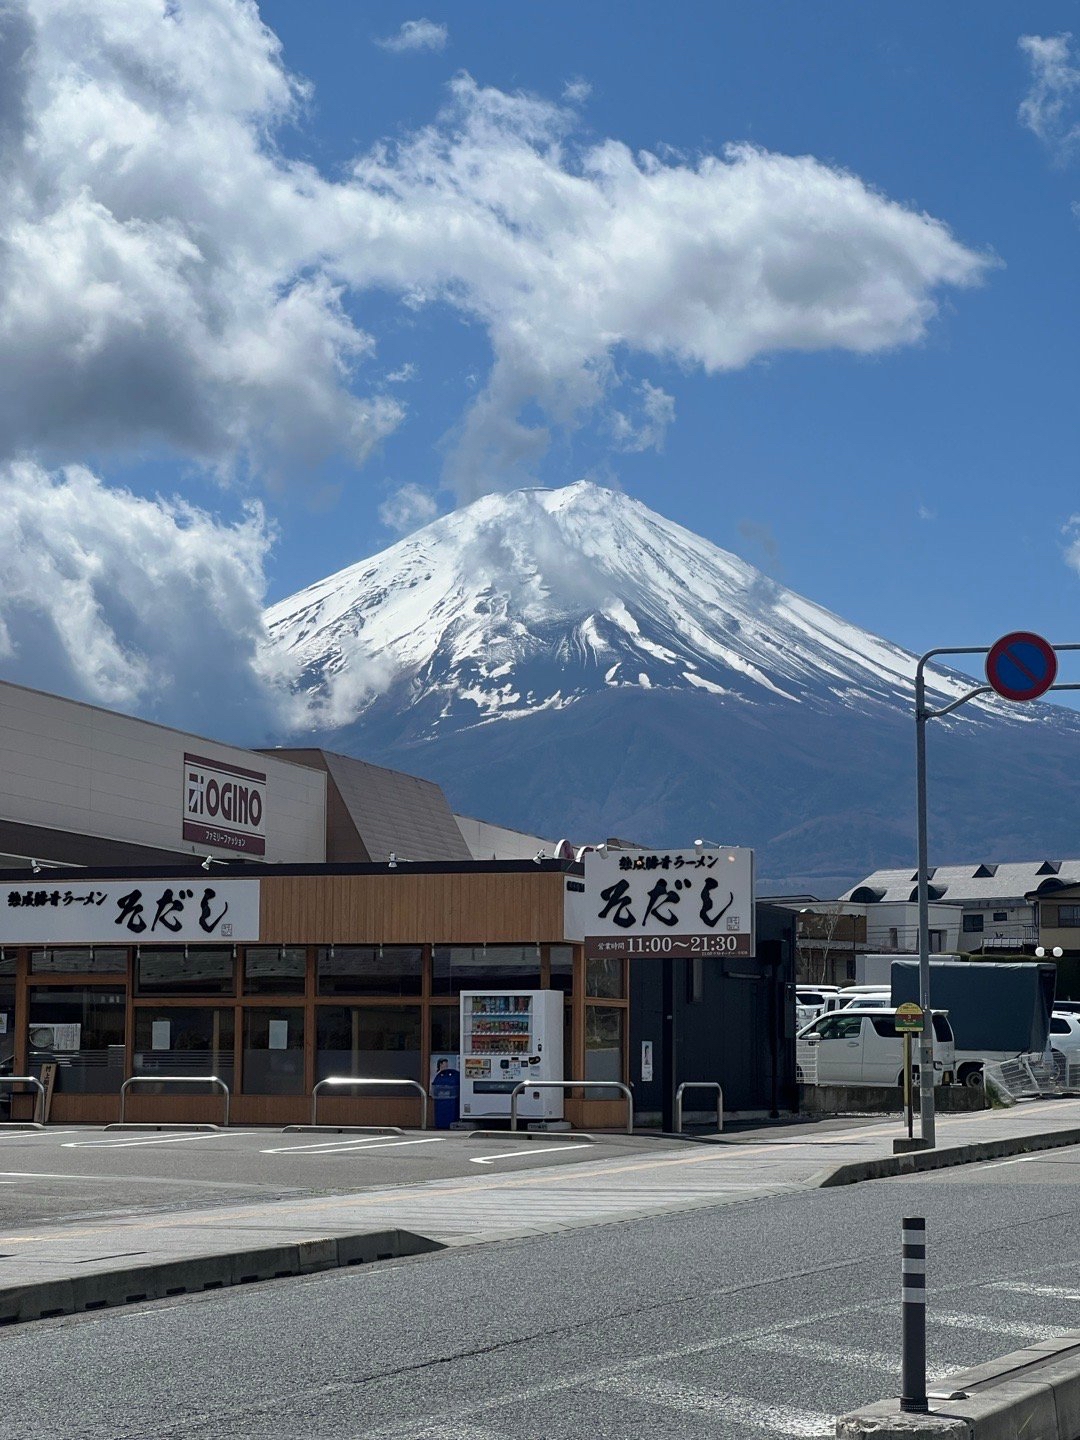 谁能凭爱意要富士山私有❤️